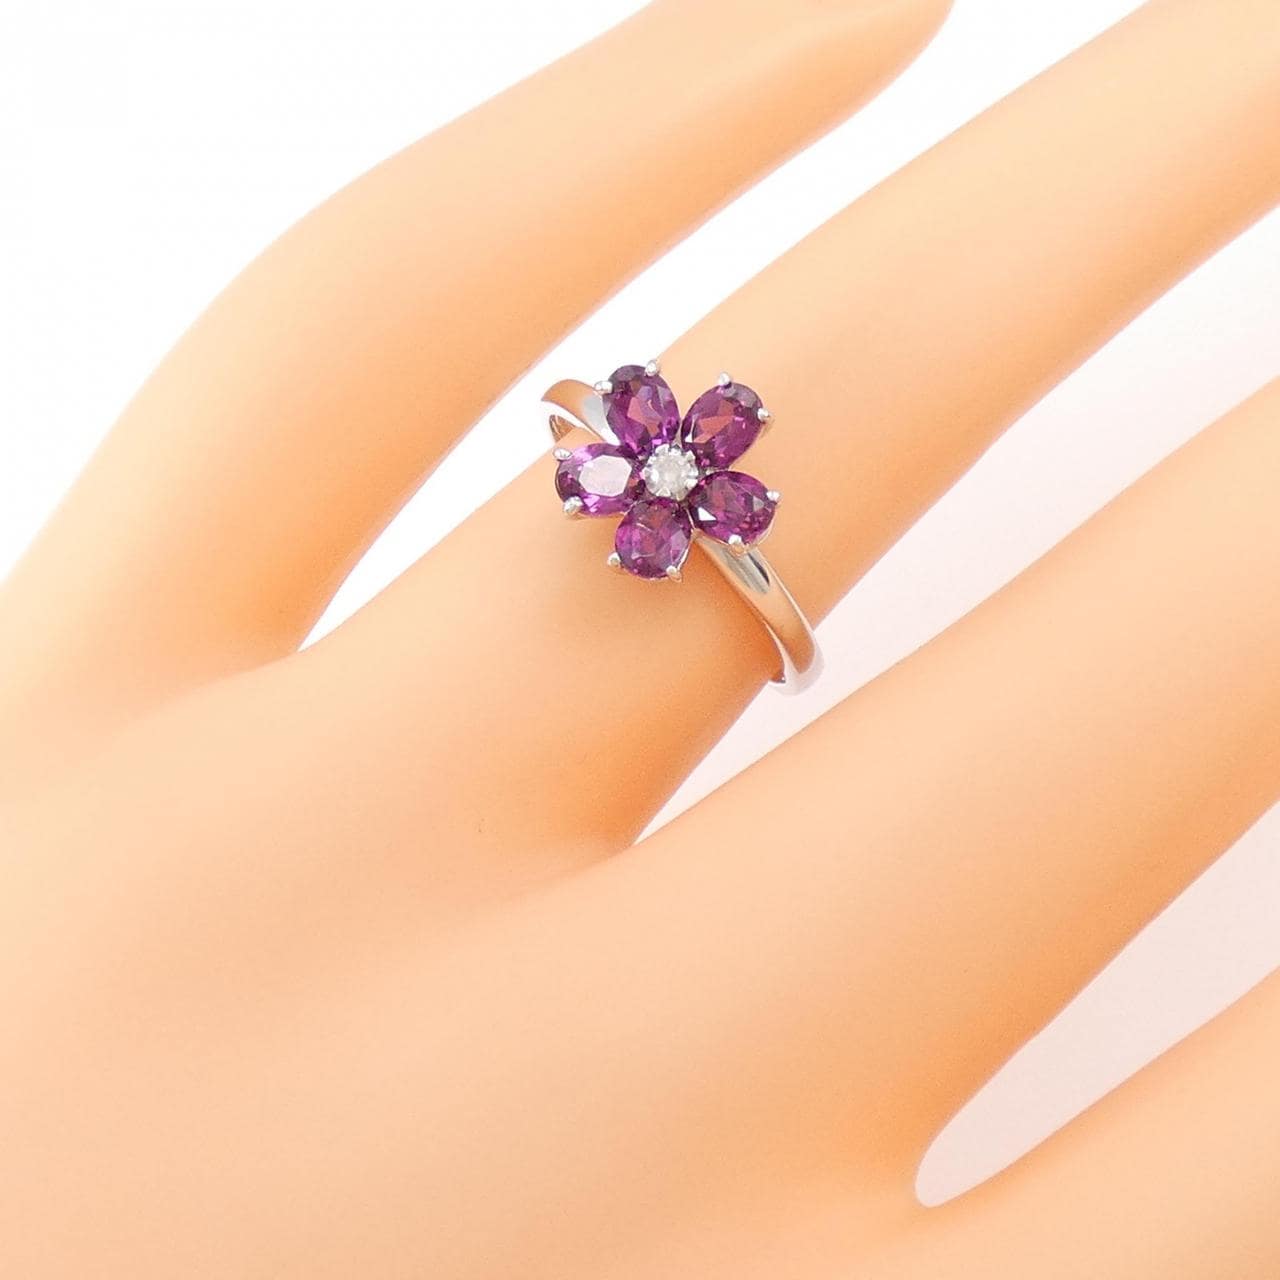 K18WG flower Garnet ring